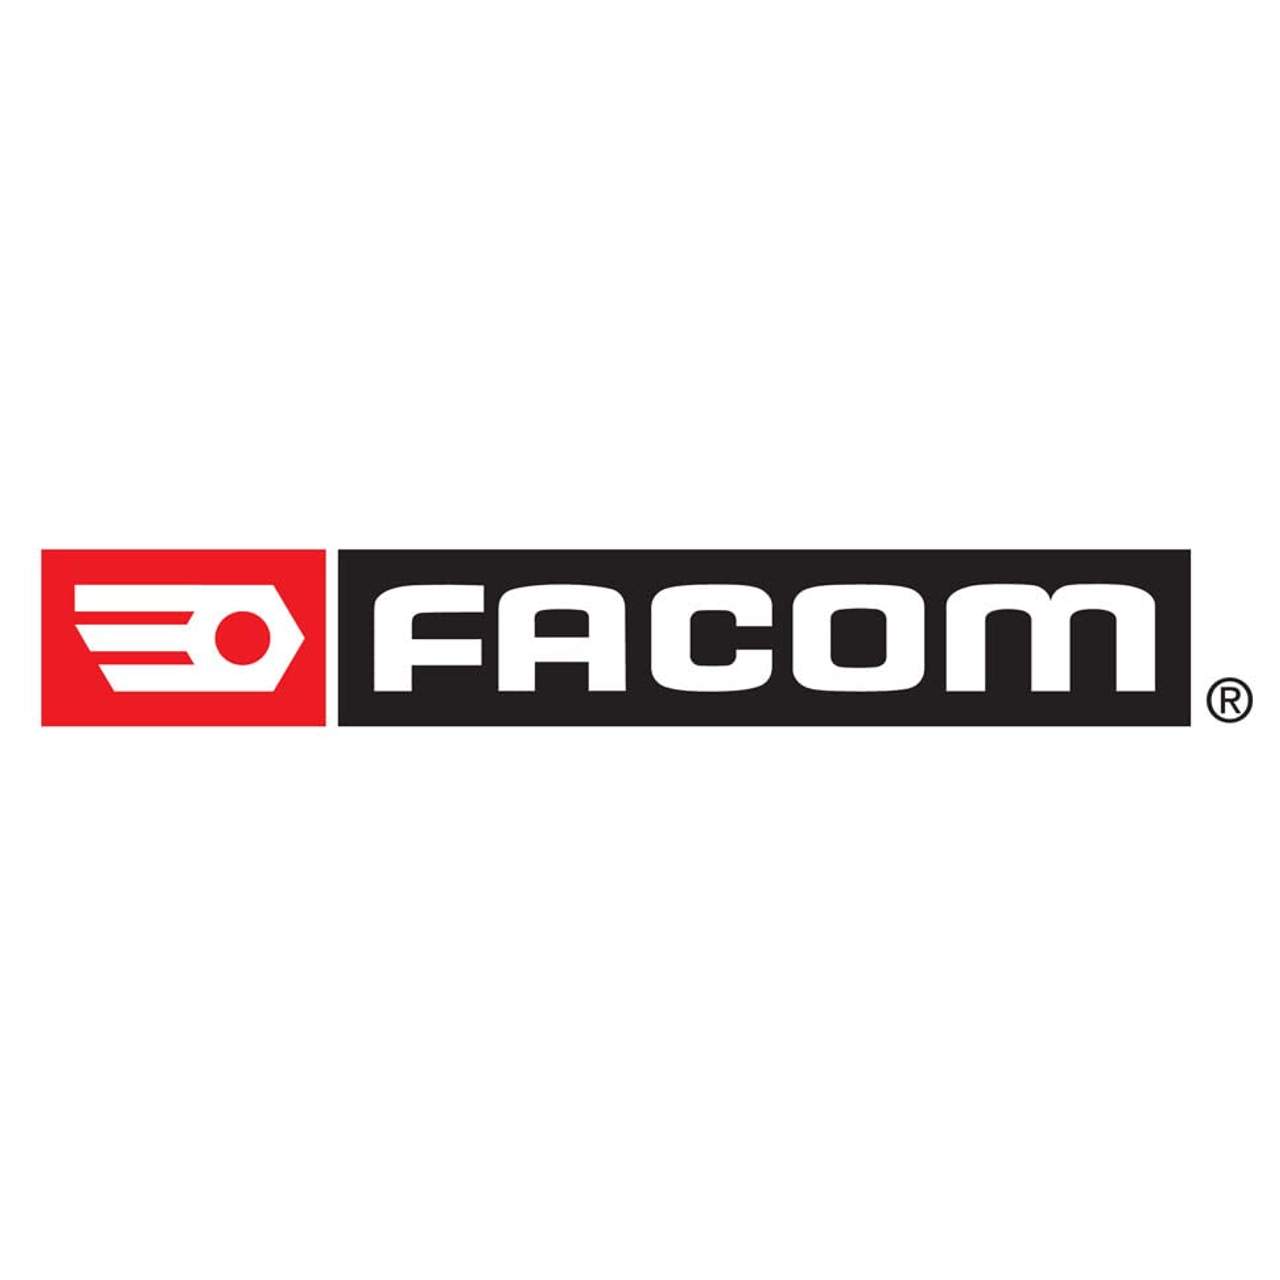 Facom Modul 10 mit Splinttreibern mit Handgriff